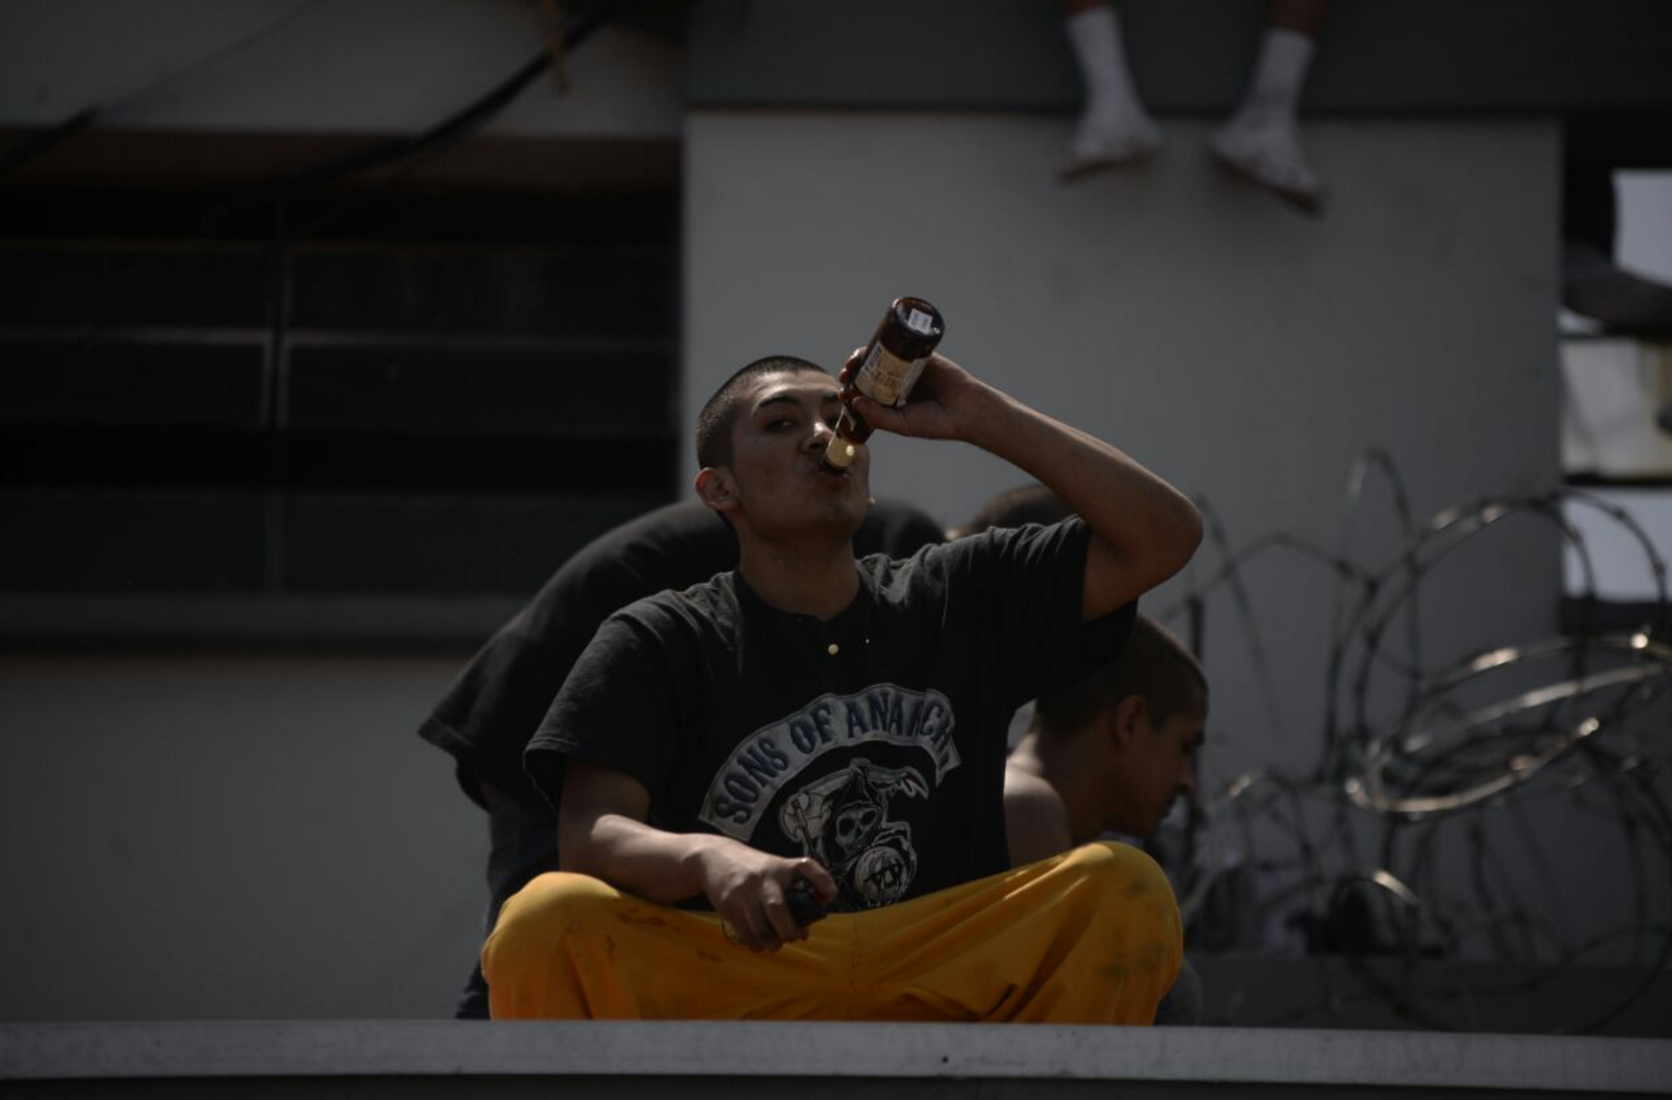 Jóvenes de Las Gaviotas entran a robar cervezas y terminan heridos - Soy502 (Comunicado de prensa)